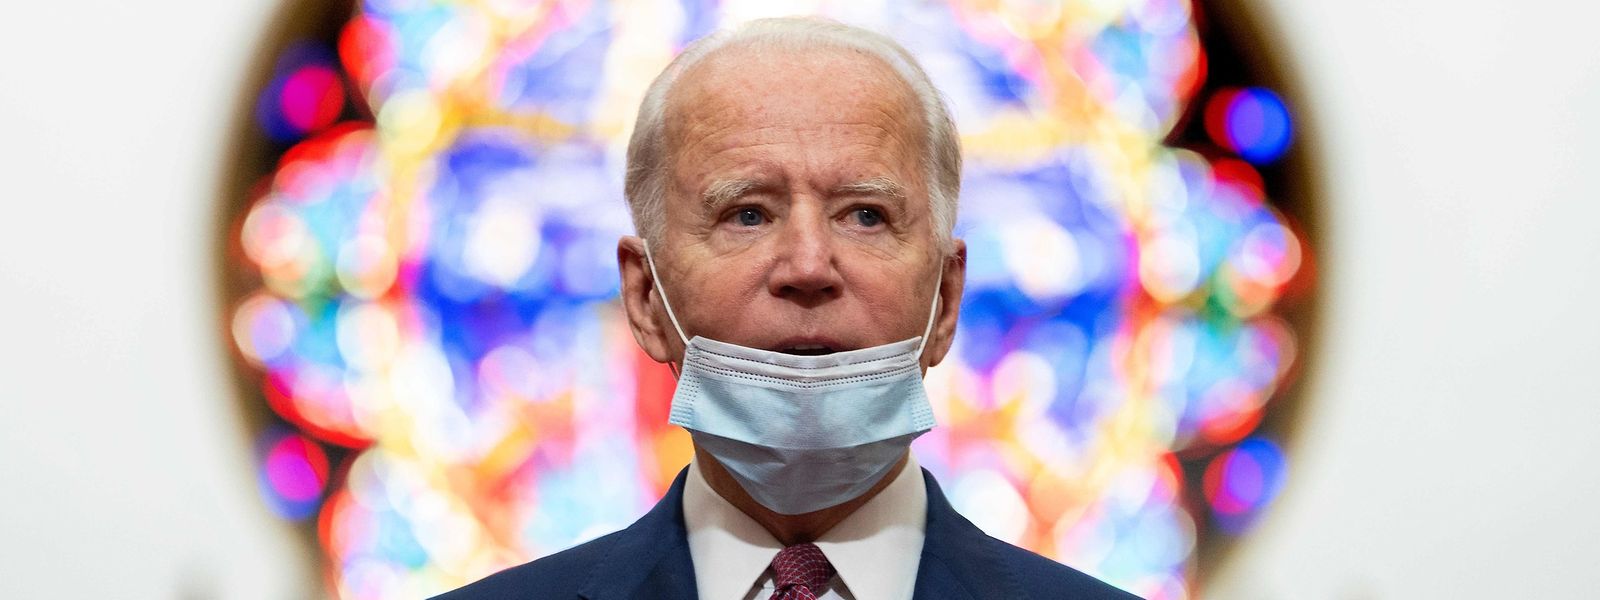 Joe Biden zeigt sich bei öffentlichen Auftritten wie hier in einer Kirche in Wilmington meist mit Gesichtsmaske - im Kontrast zu Trump, der sich hartnäckig weigert, in der Öffentlichkeit eine Maske zu tragen.